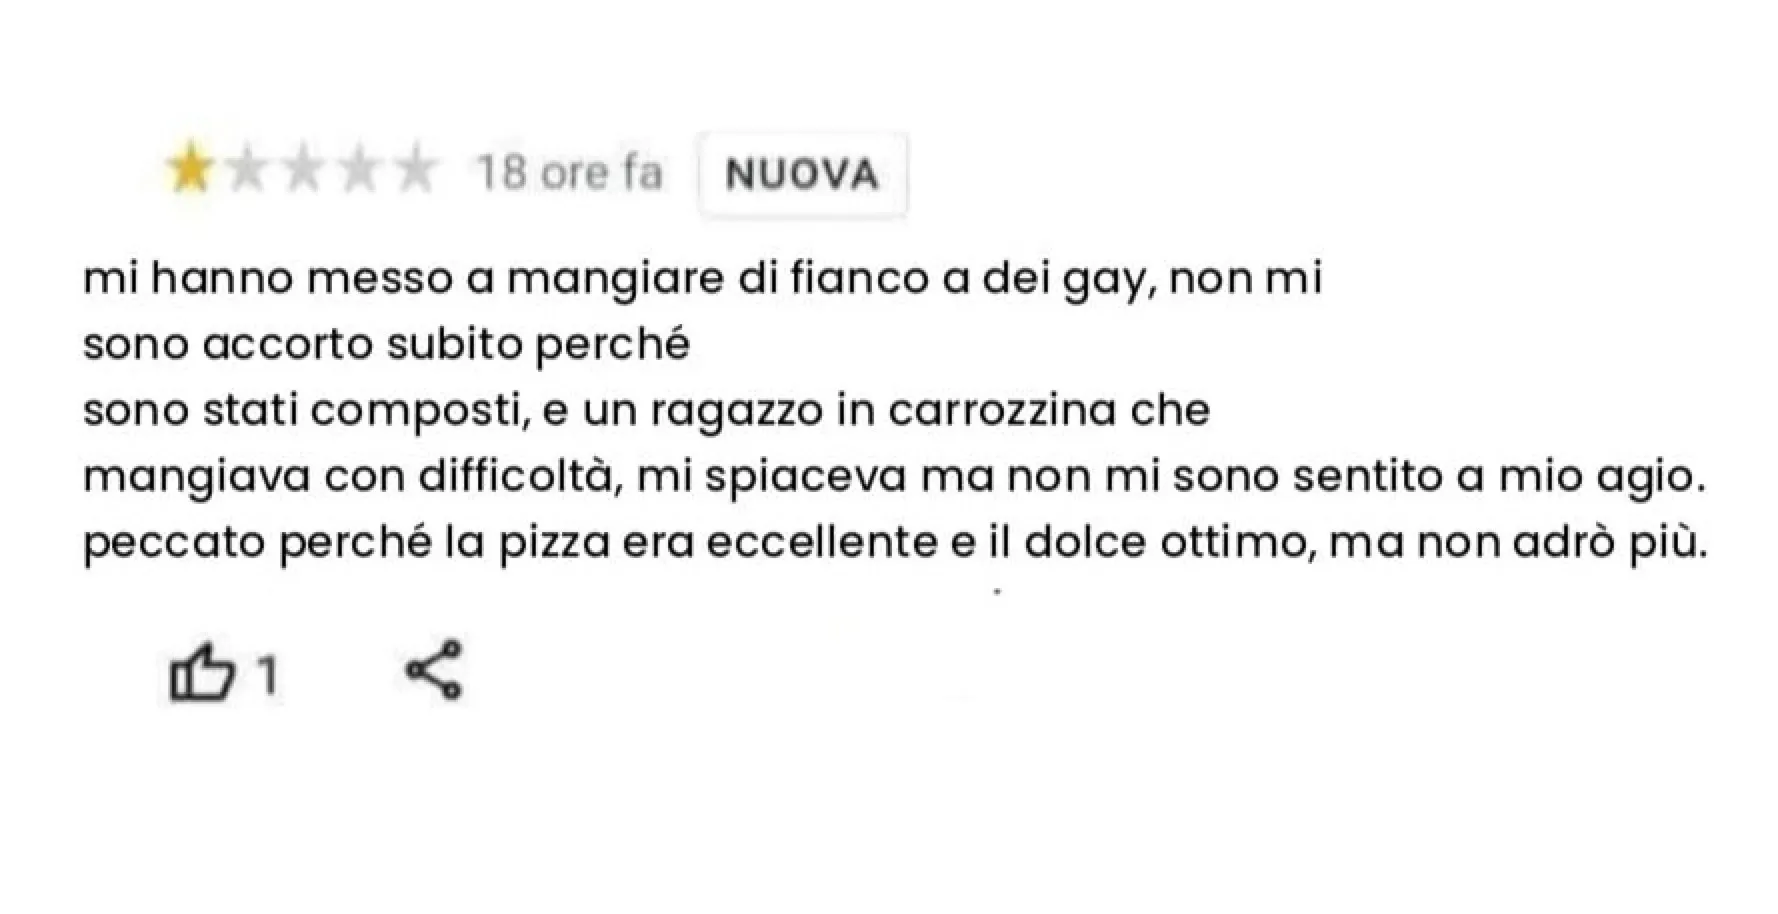 Giovanna Pedretti, titolare di una pizzeria a Sant'Angelo Lodigiano, risponde fermamente a una recensione negativa sul suo locale per commenti discriminatori, ricevendo ampio sostegno sui social media.